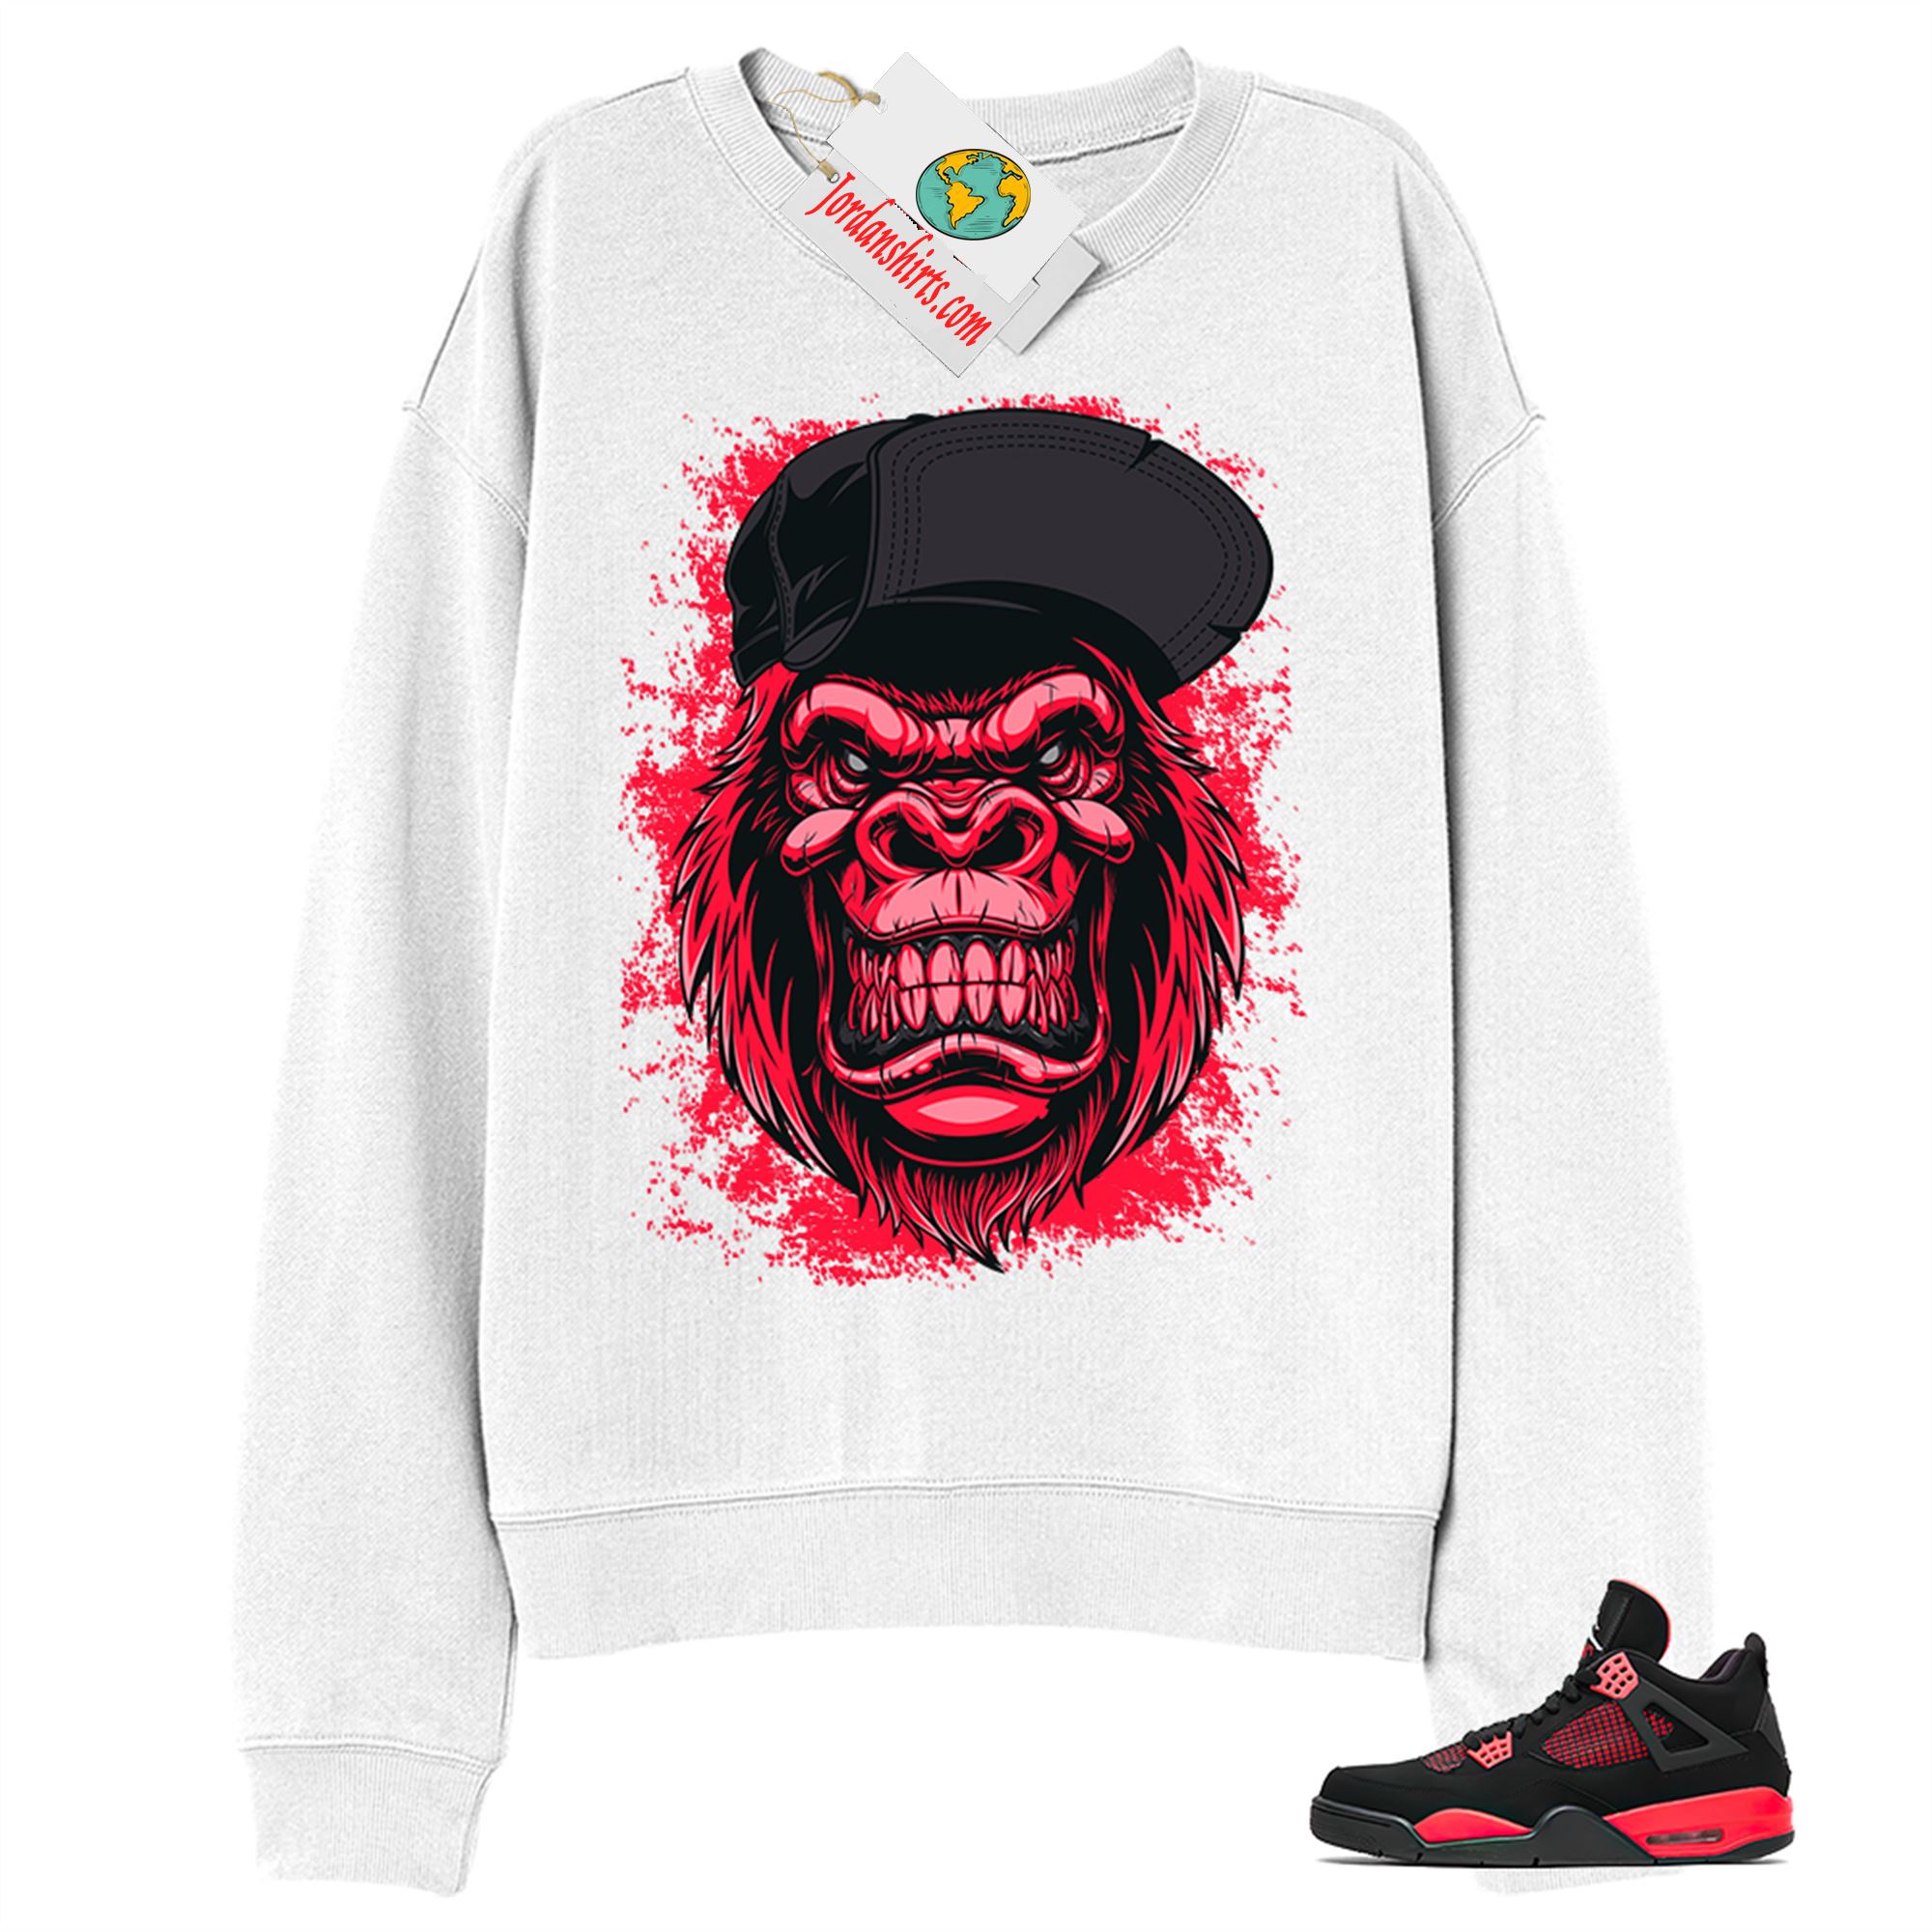 Jordan 4 Sweatshirt, Ferocious Gorilla White Sweatshirt Air Jordan 4 Red Thunder 4s Full Size Up To 5xl